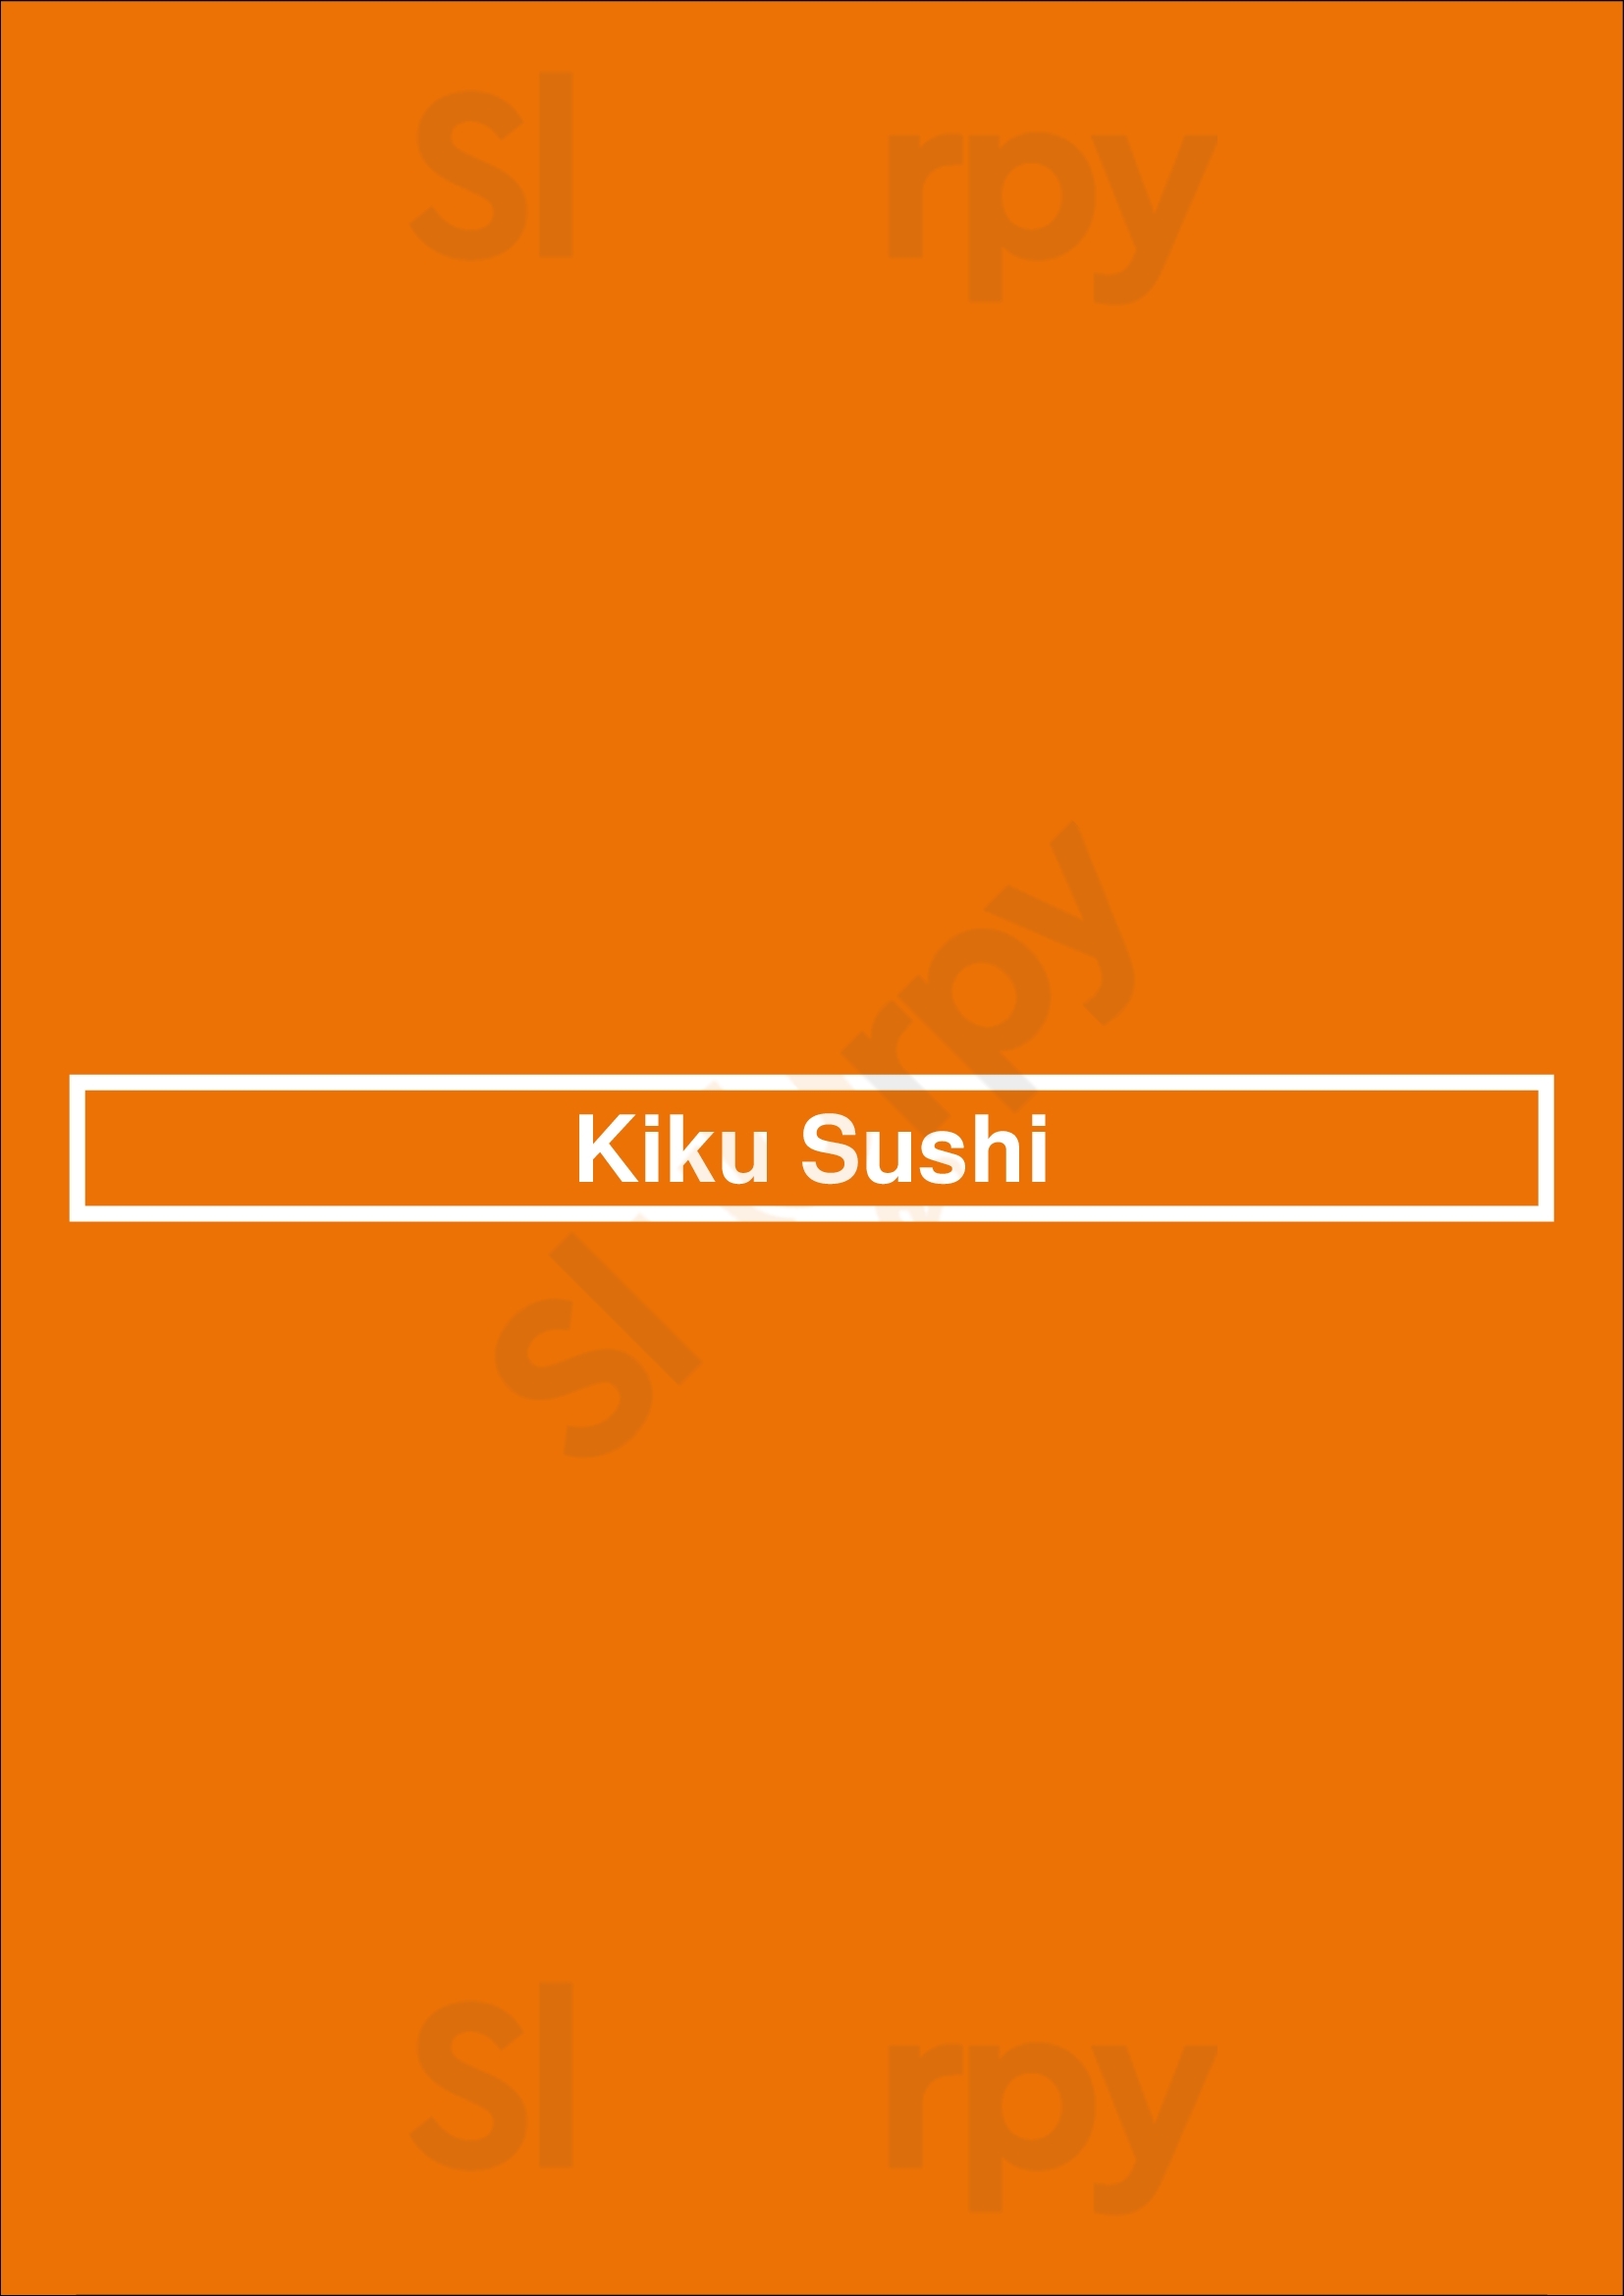 Kiku Sushi Burnaby Menu - 1